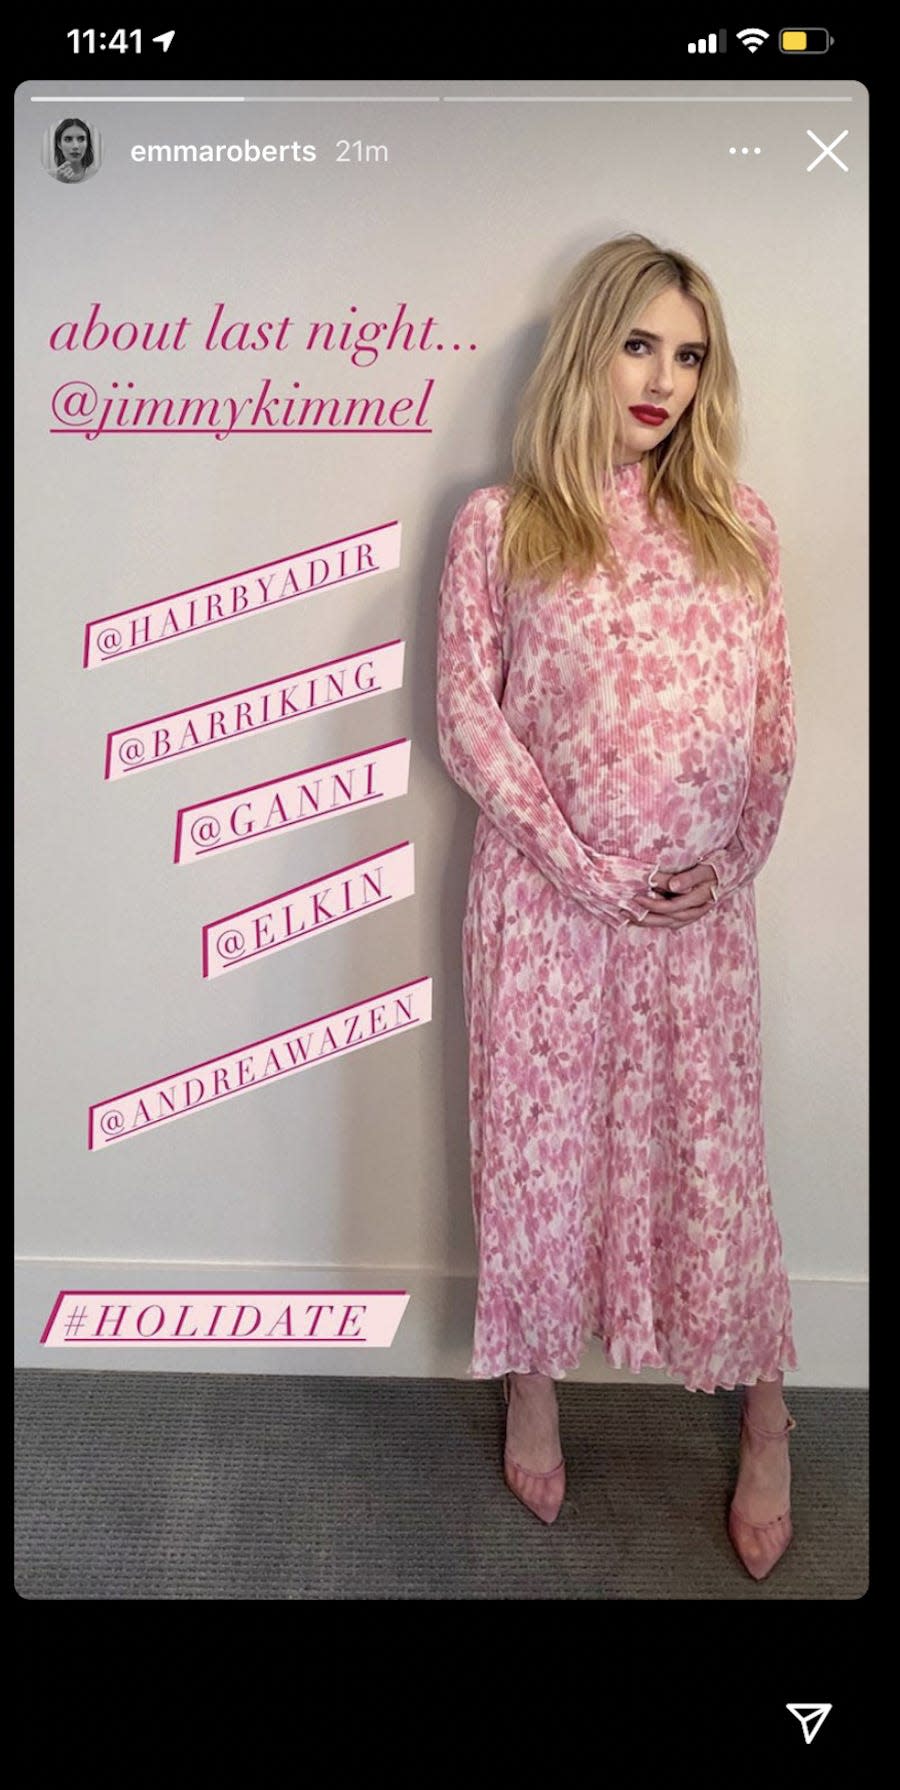 emma roberts maternity style